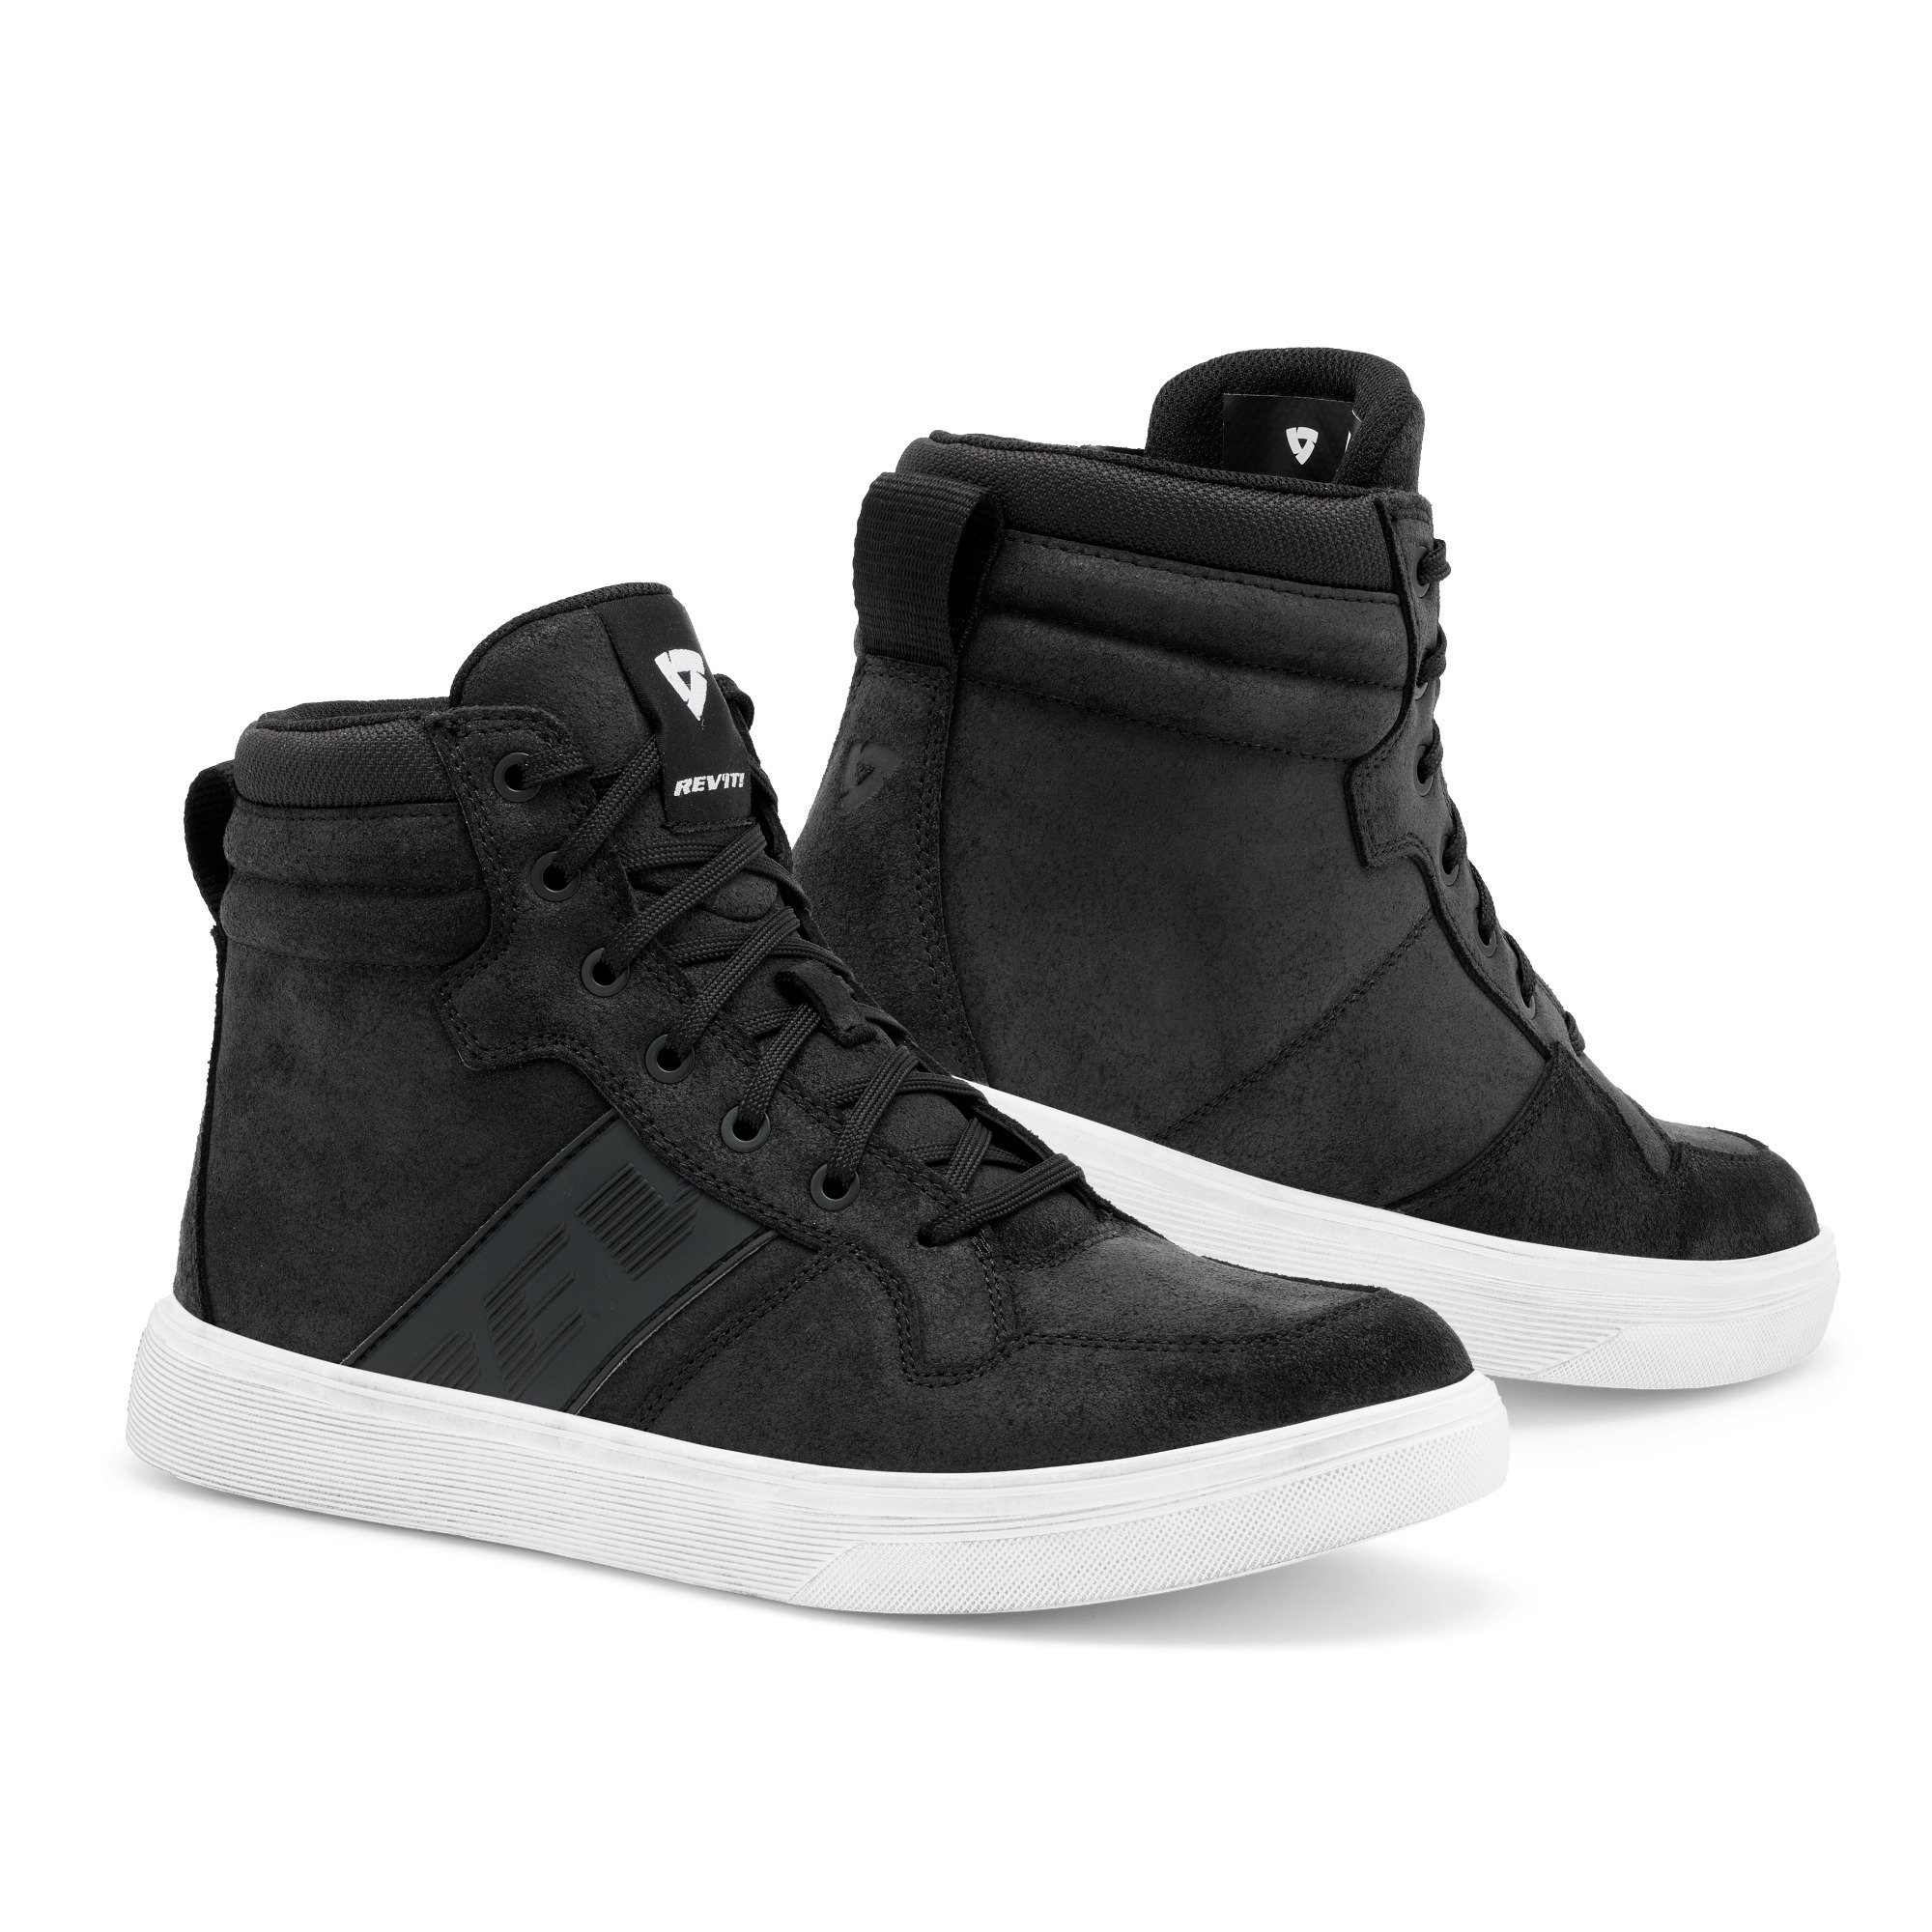 Image of REV'IT! Kick Shoes Black White Size 47 EN